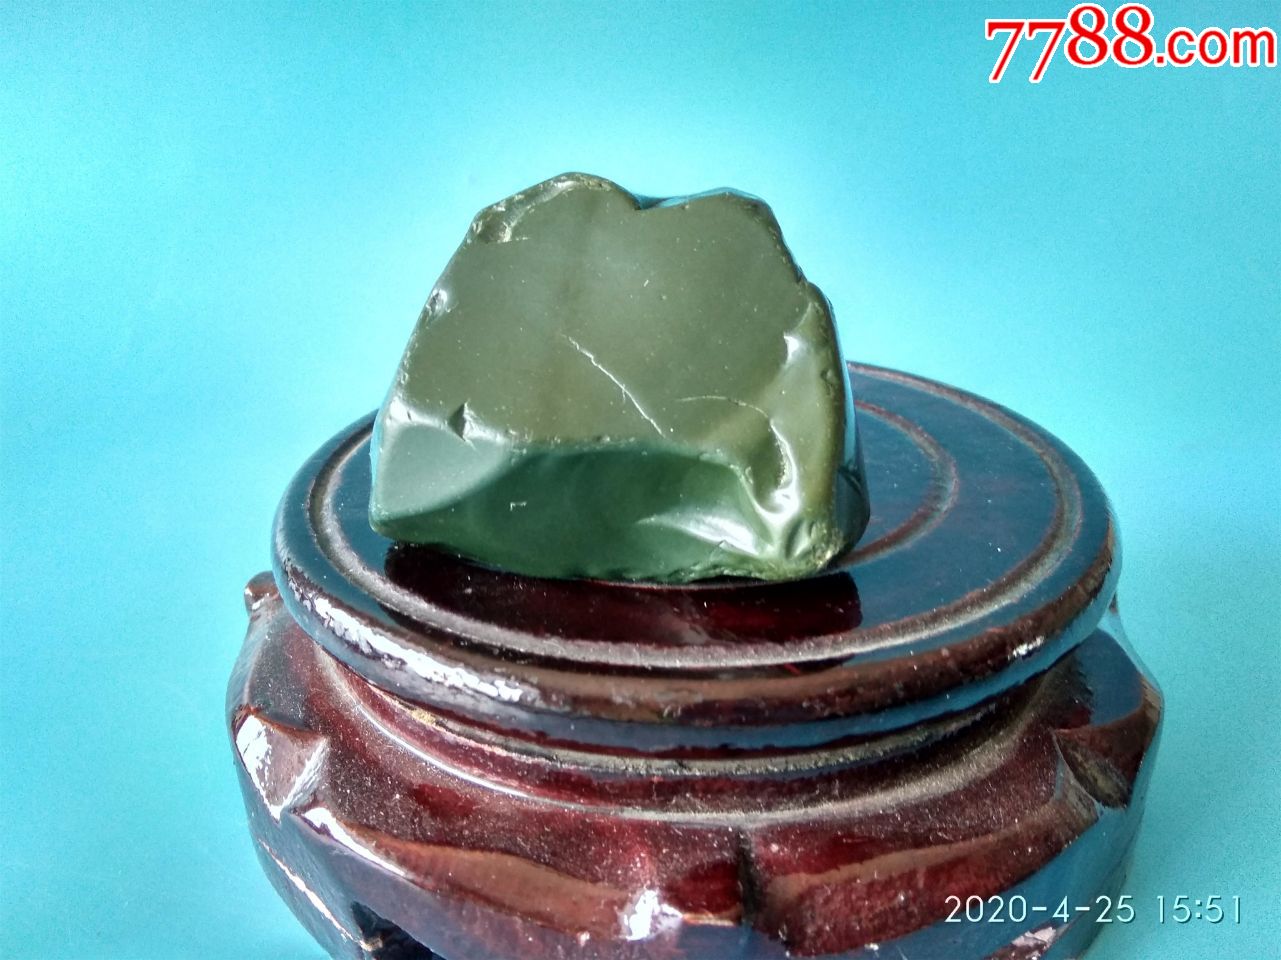 新疆奇石象形石沙漠漆,绿色的石头像一只坐着的青蛙